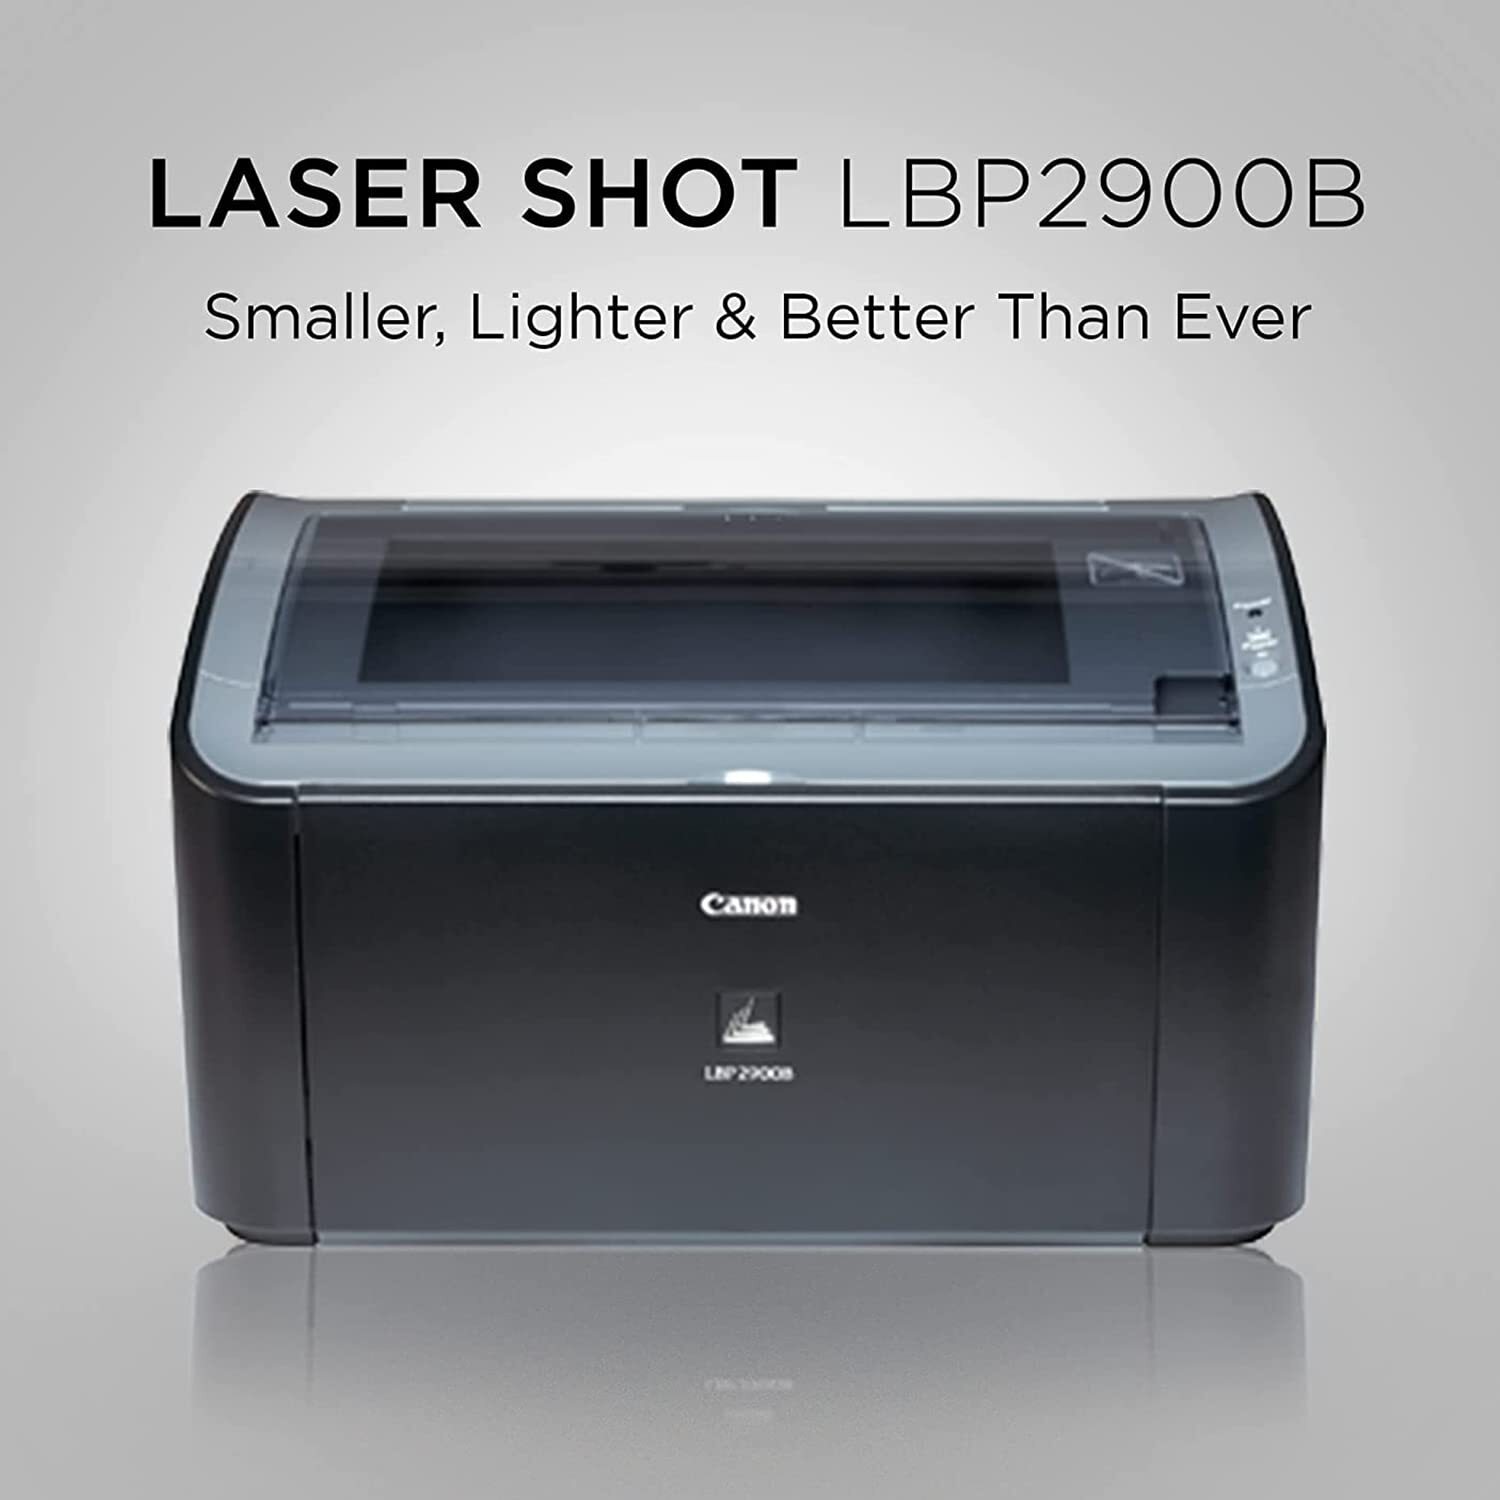 LaserShot LBP2900b PRINTER